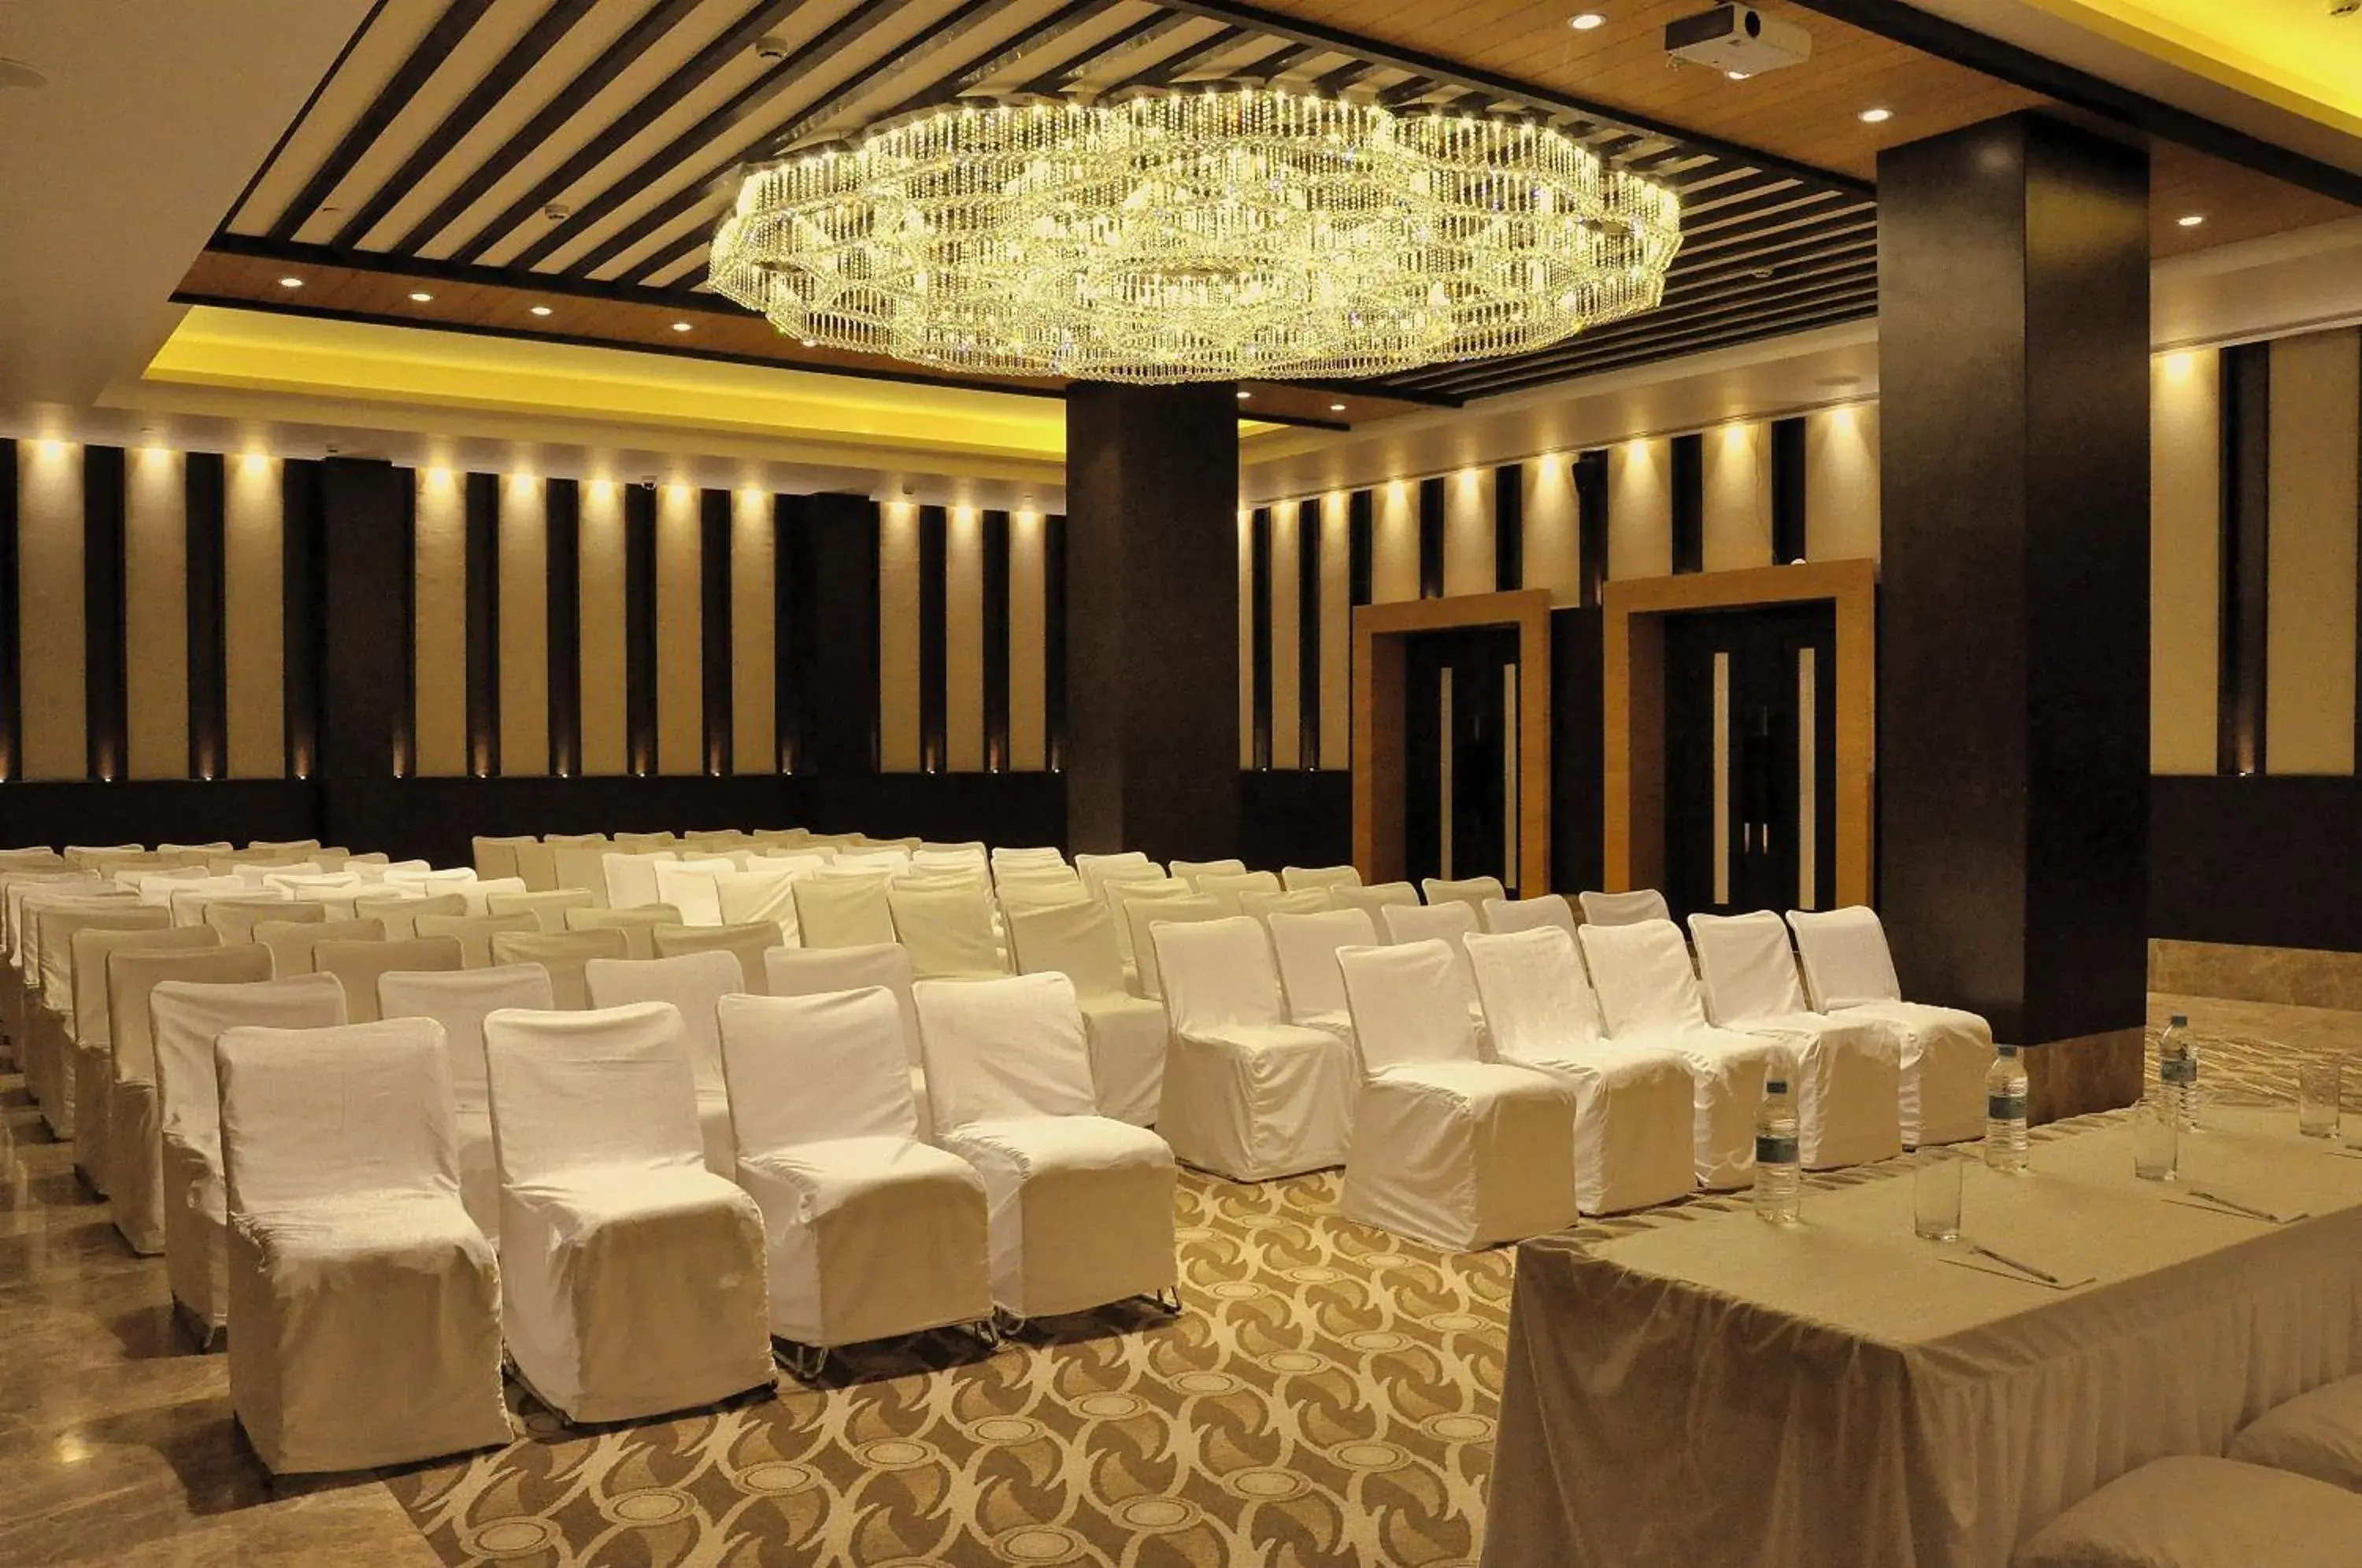 Banquet/Function facilities, Banquet Facilities in Hotel Marigold- Sitapura